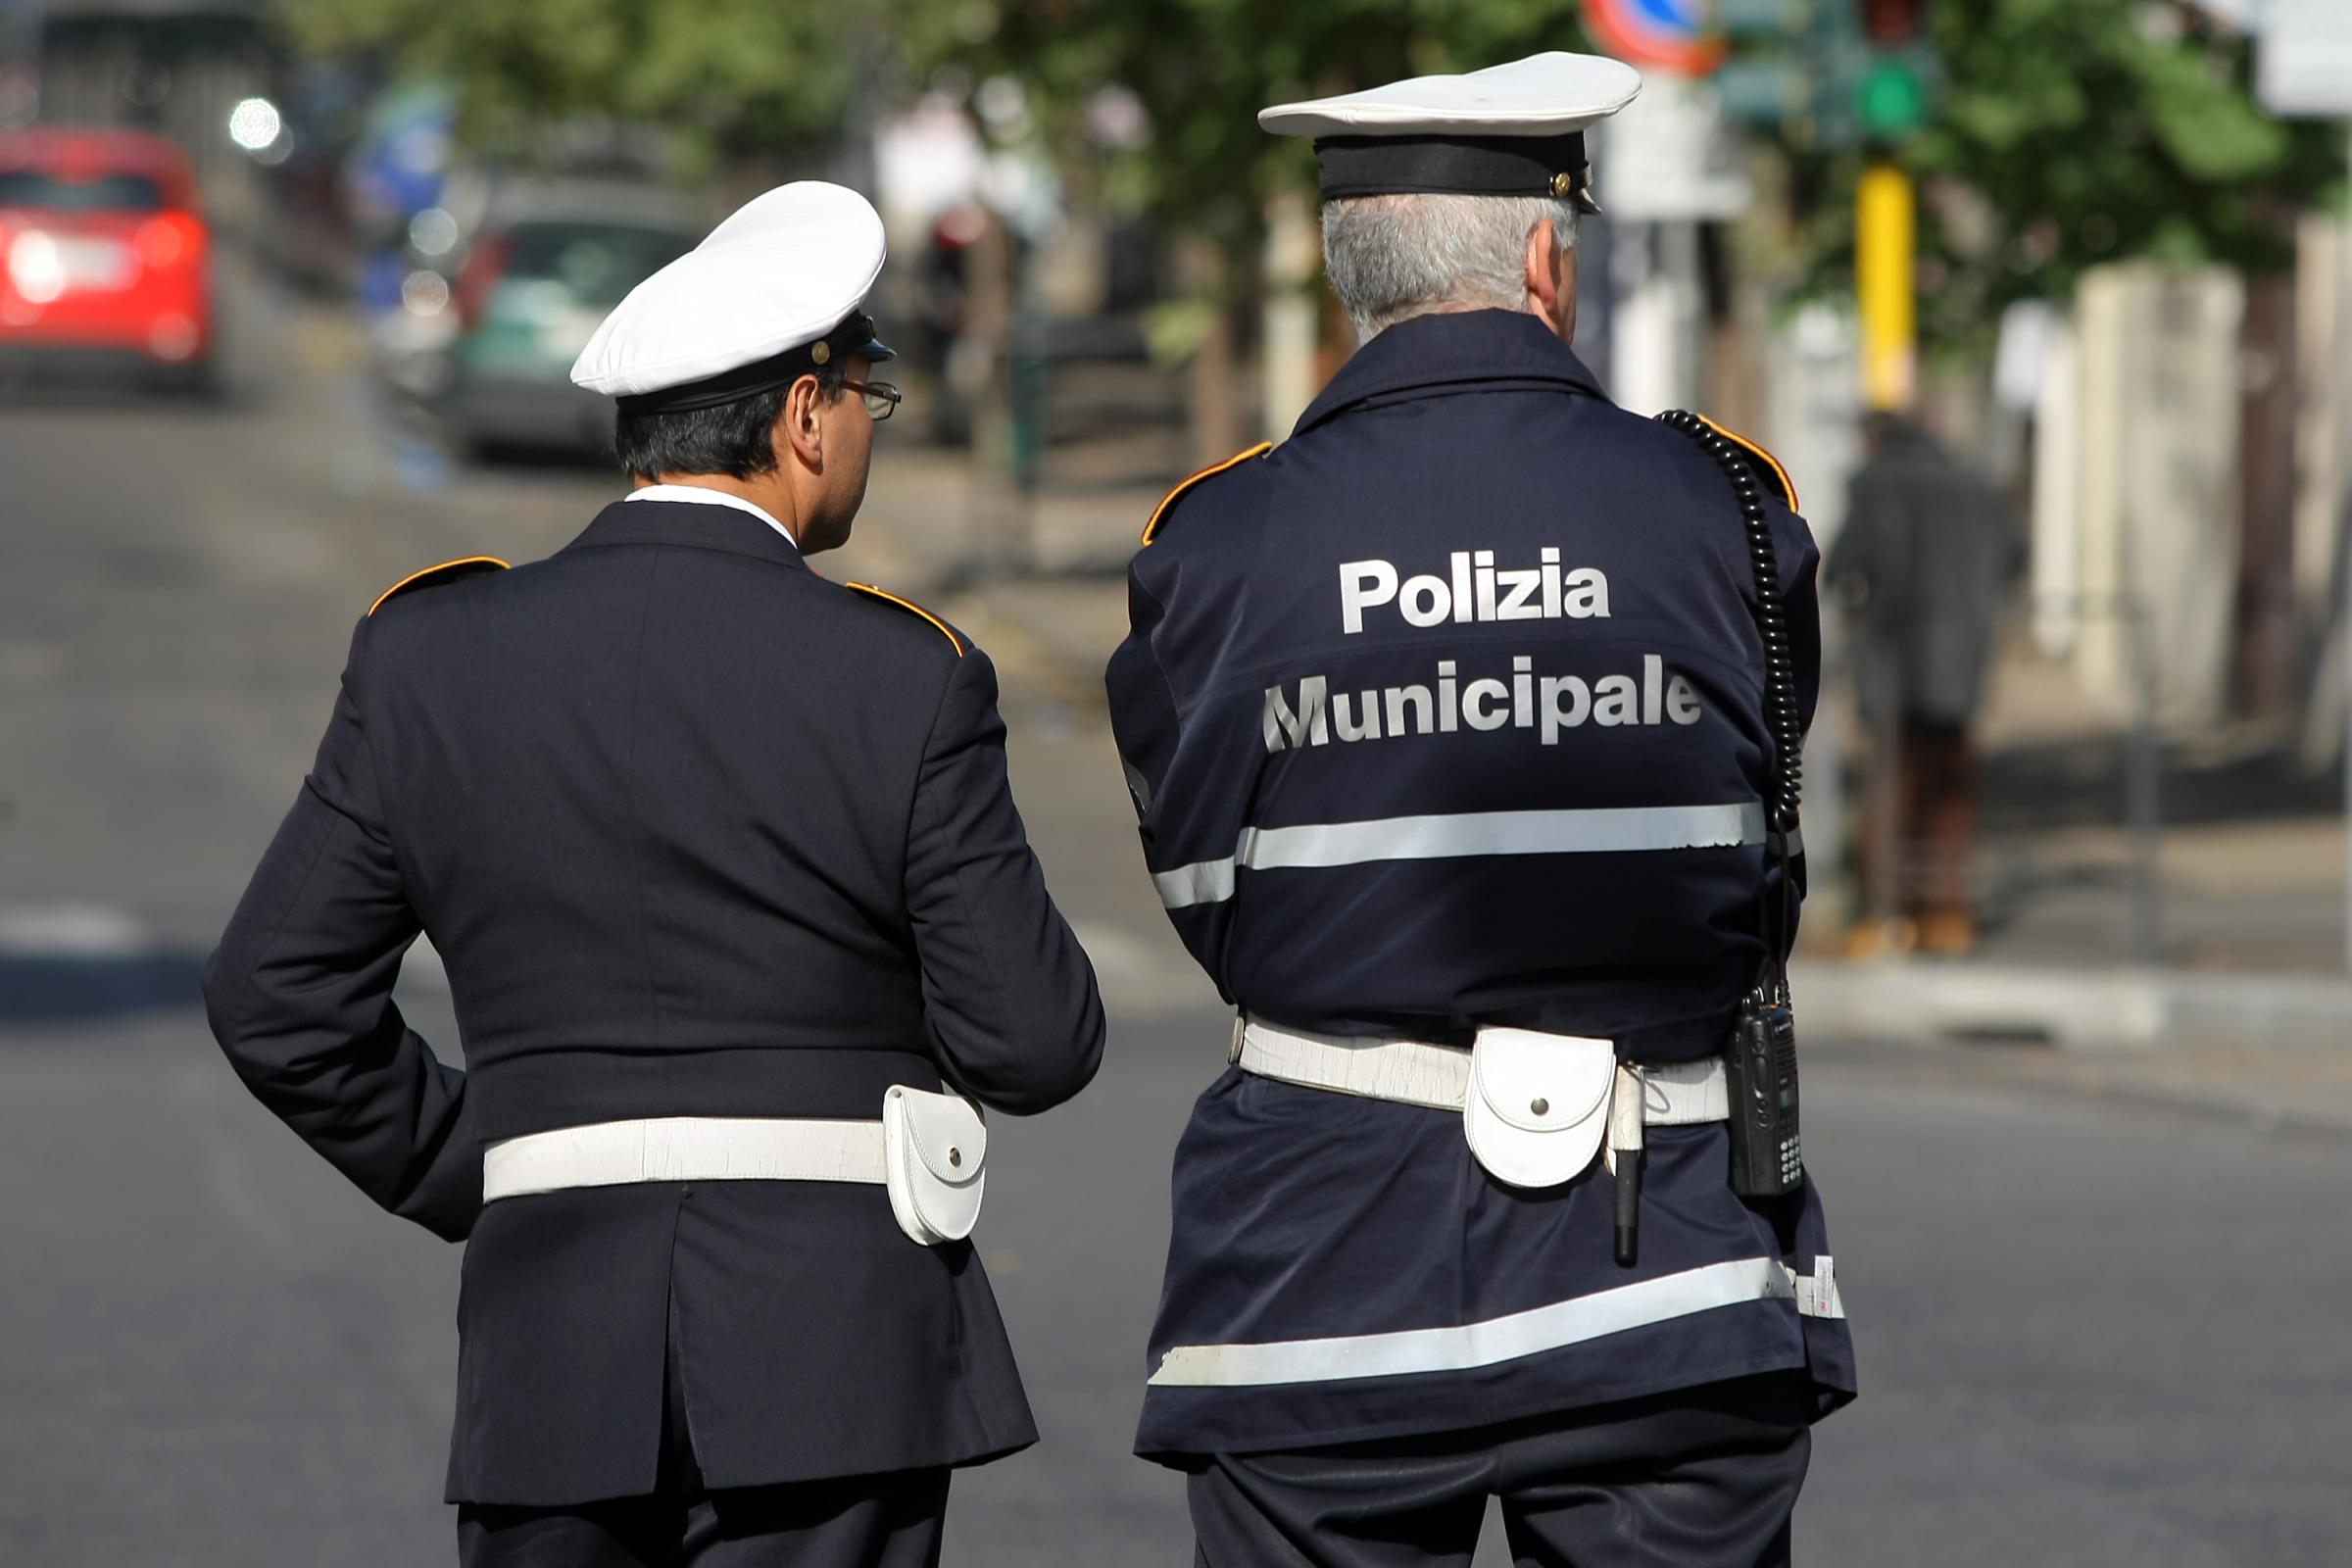 Operatori polizia municipale (immagine d'archivio, non riferita al testo, google image)